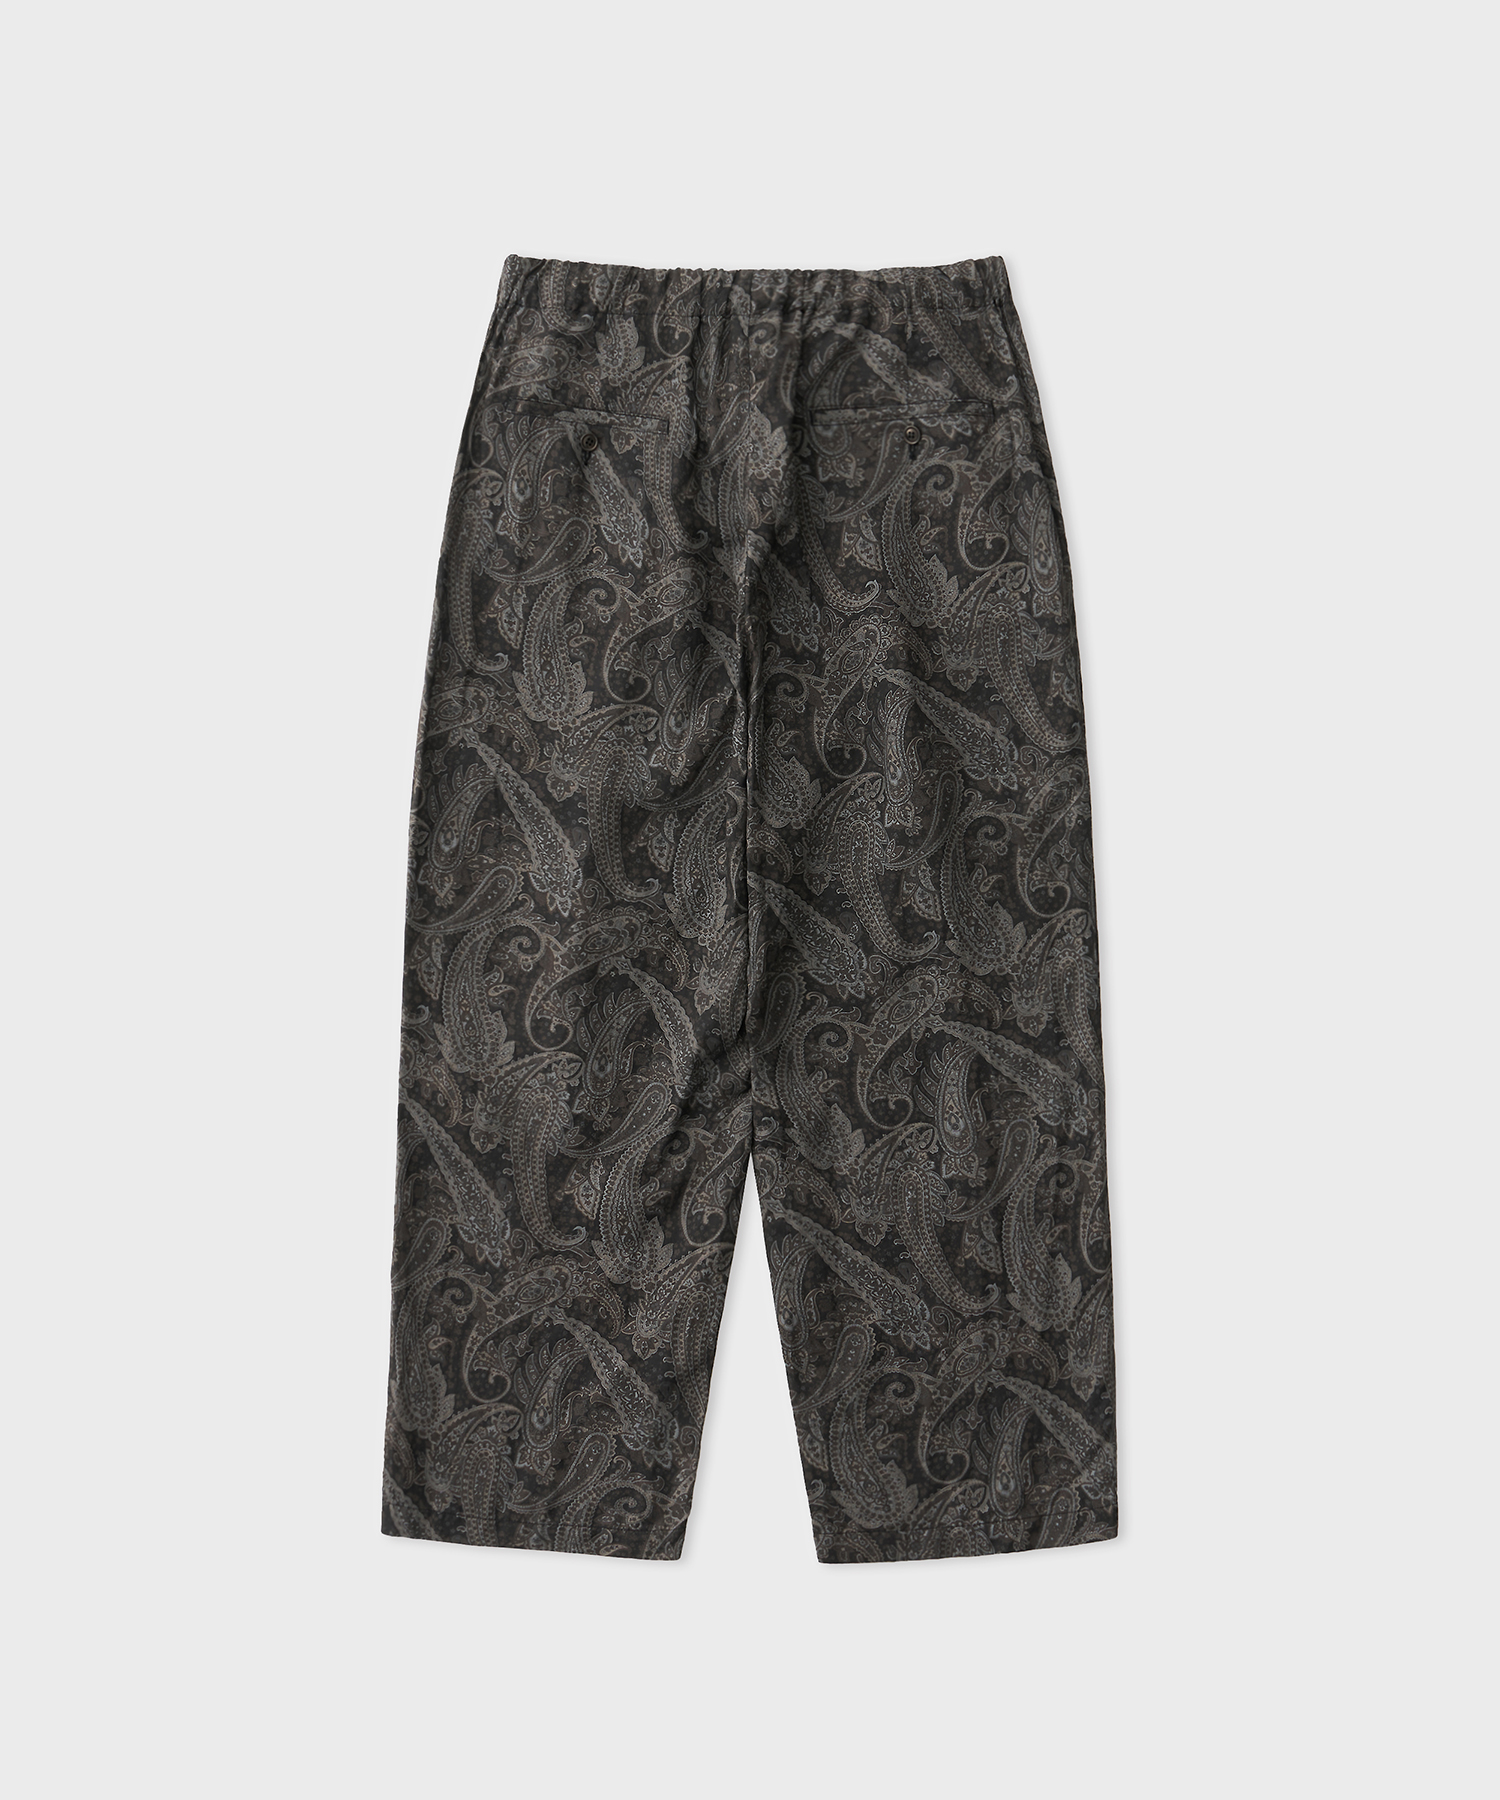 Paisley Pajama Trousers (Gray)